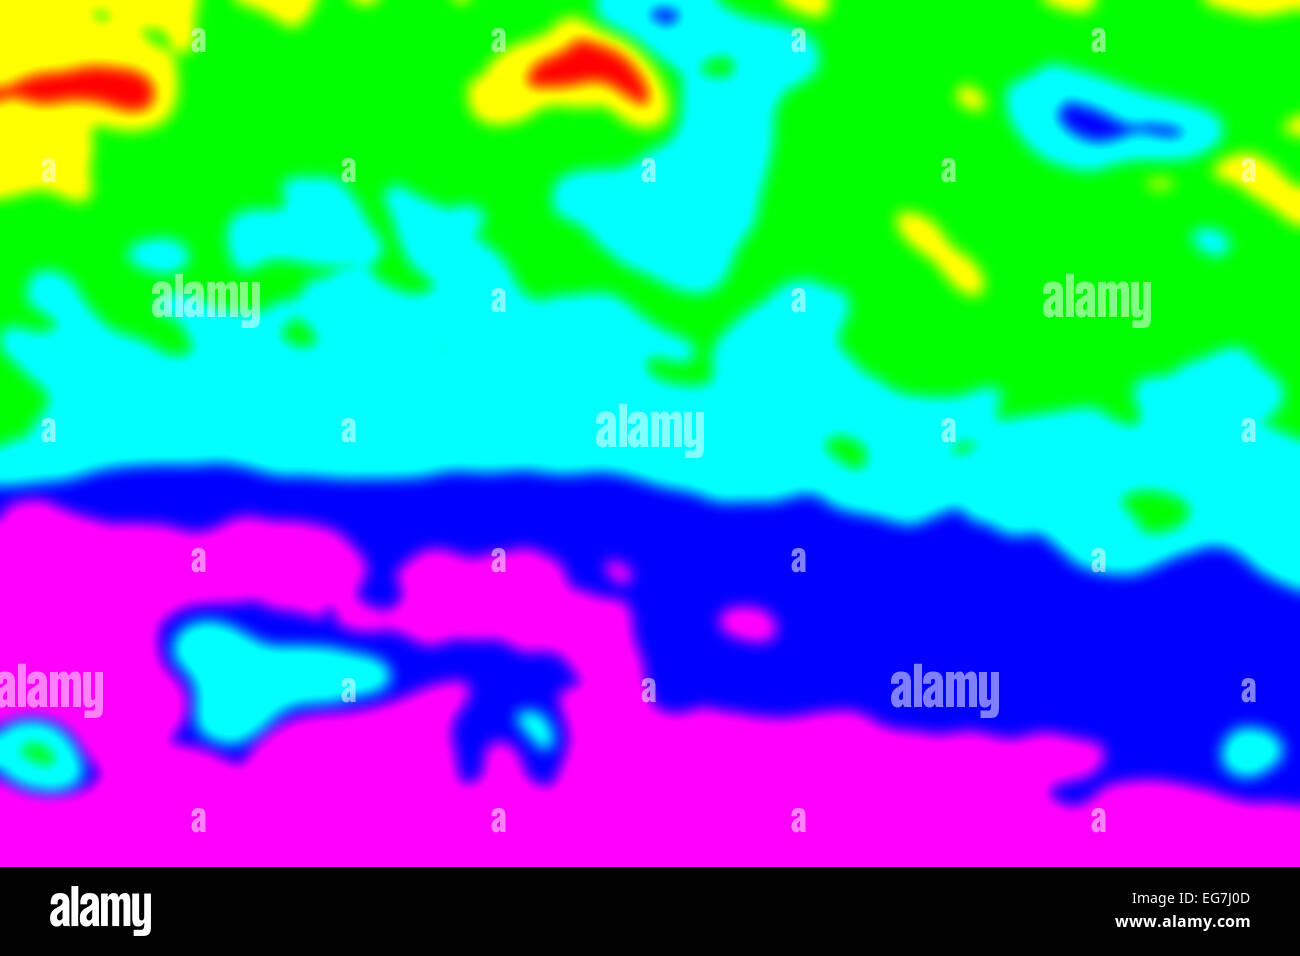 Zusammenfassung Hintergrund von unregelmäßigen Formen, Thermografie-Effekt gemacht. Stockfoto